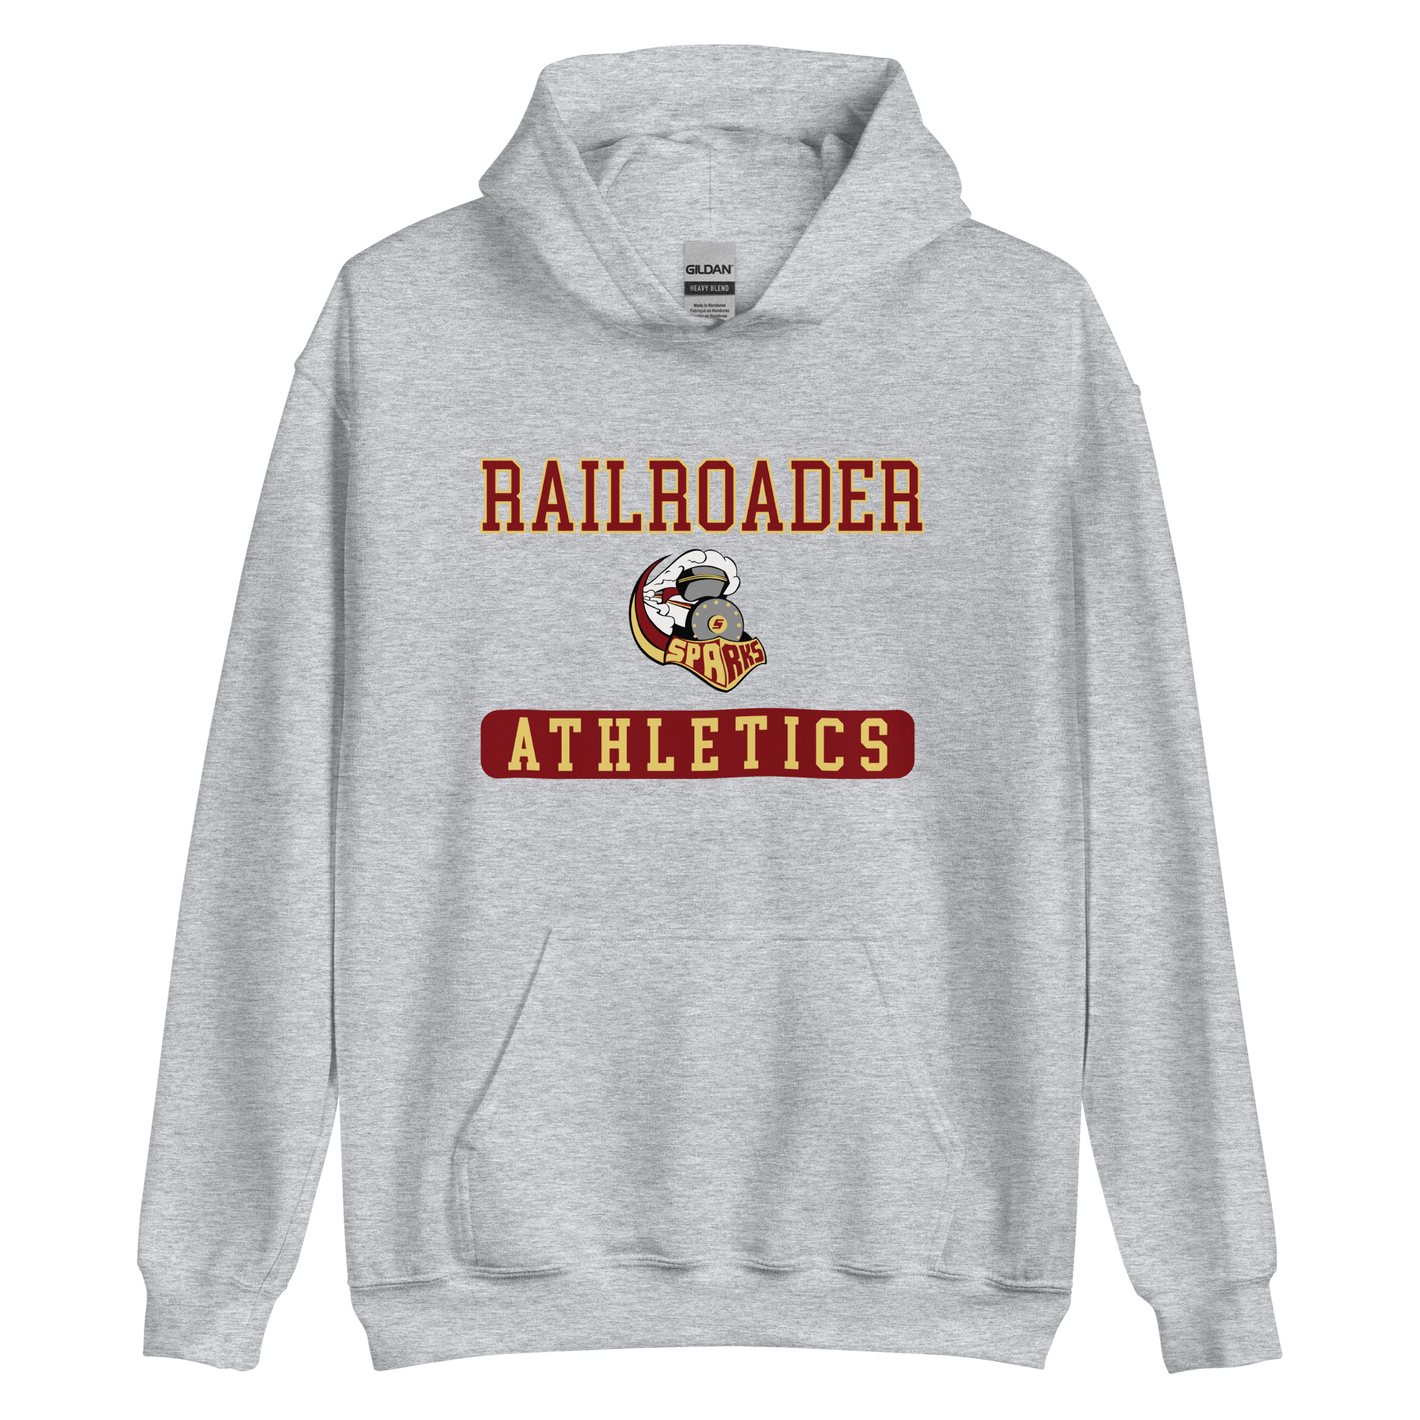 Railroaders Athletics Unisex Hoodie